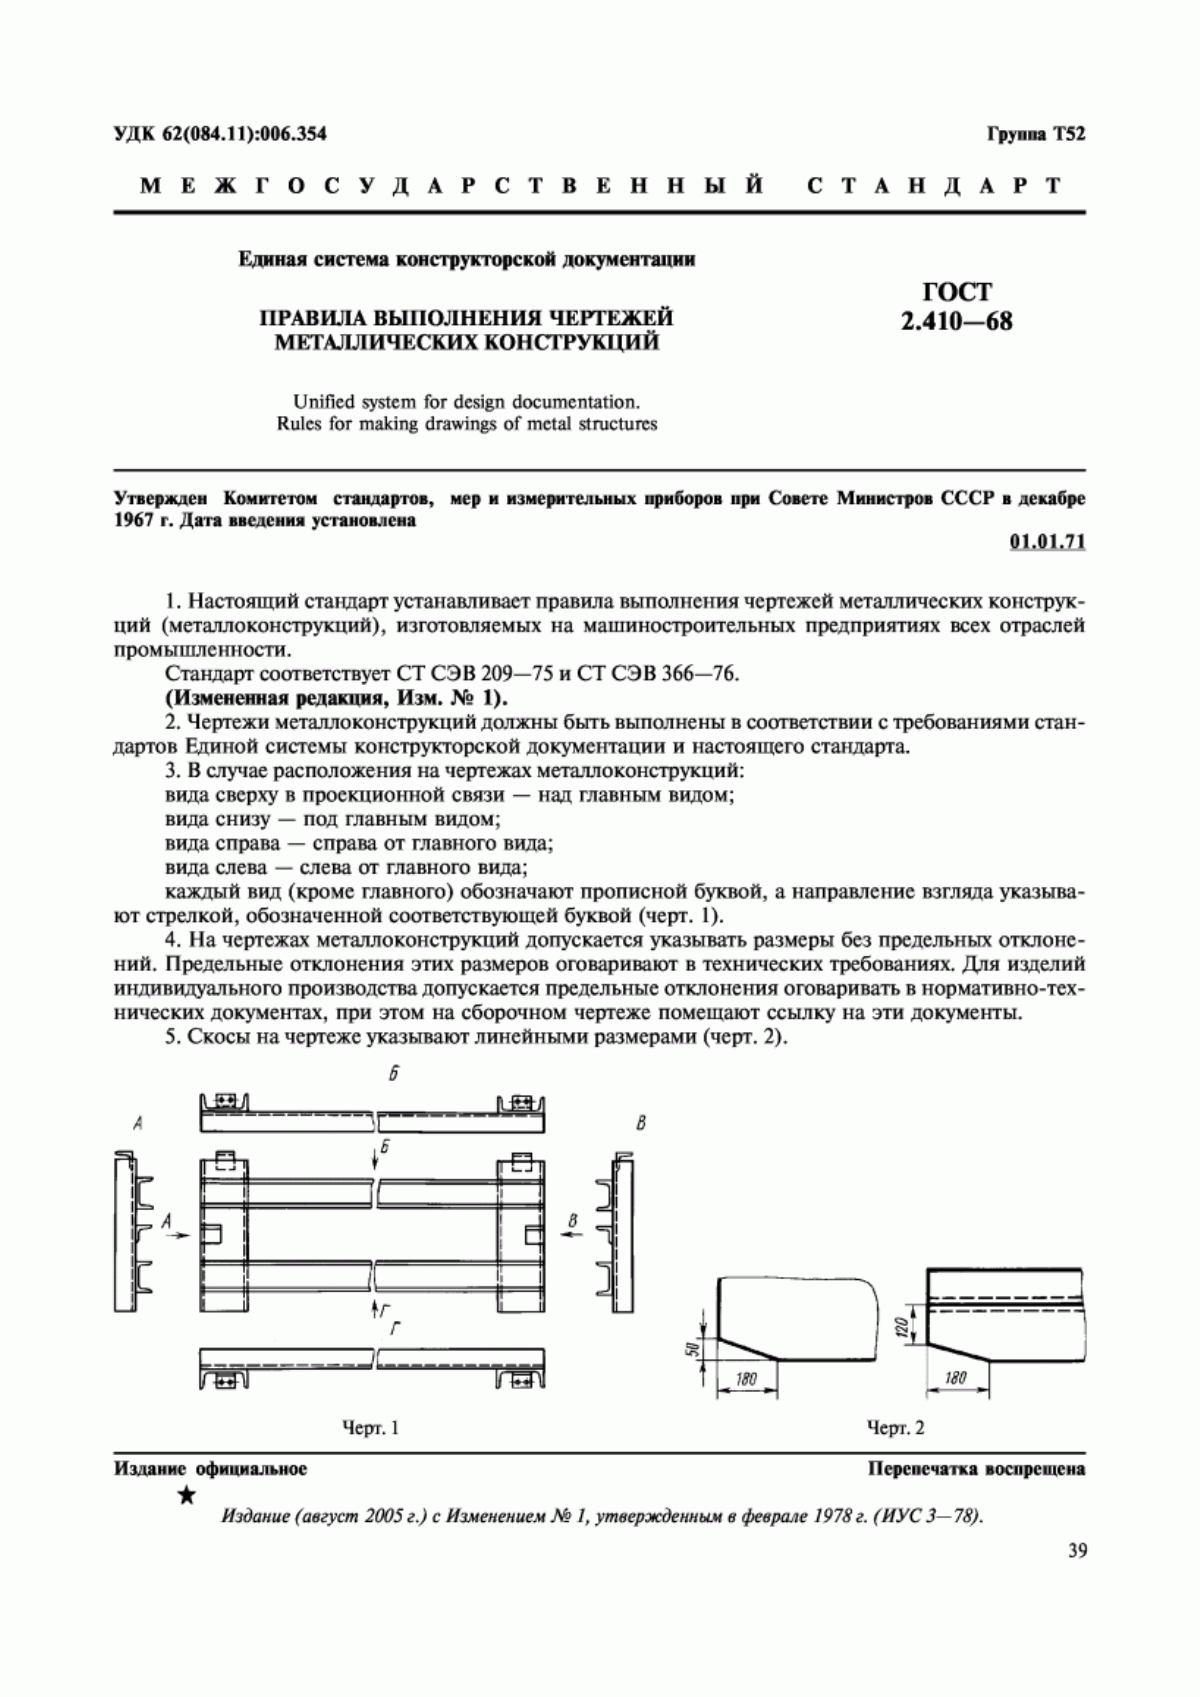 ГОСТ 2.410-68 Единая система конструкторской документации. Правила выполнения чертежей металлических конструкций